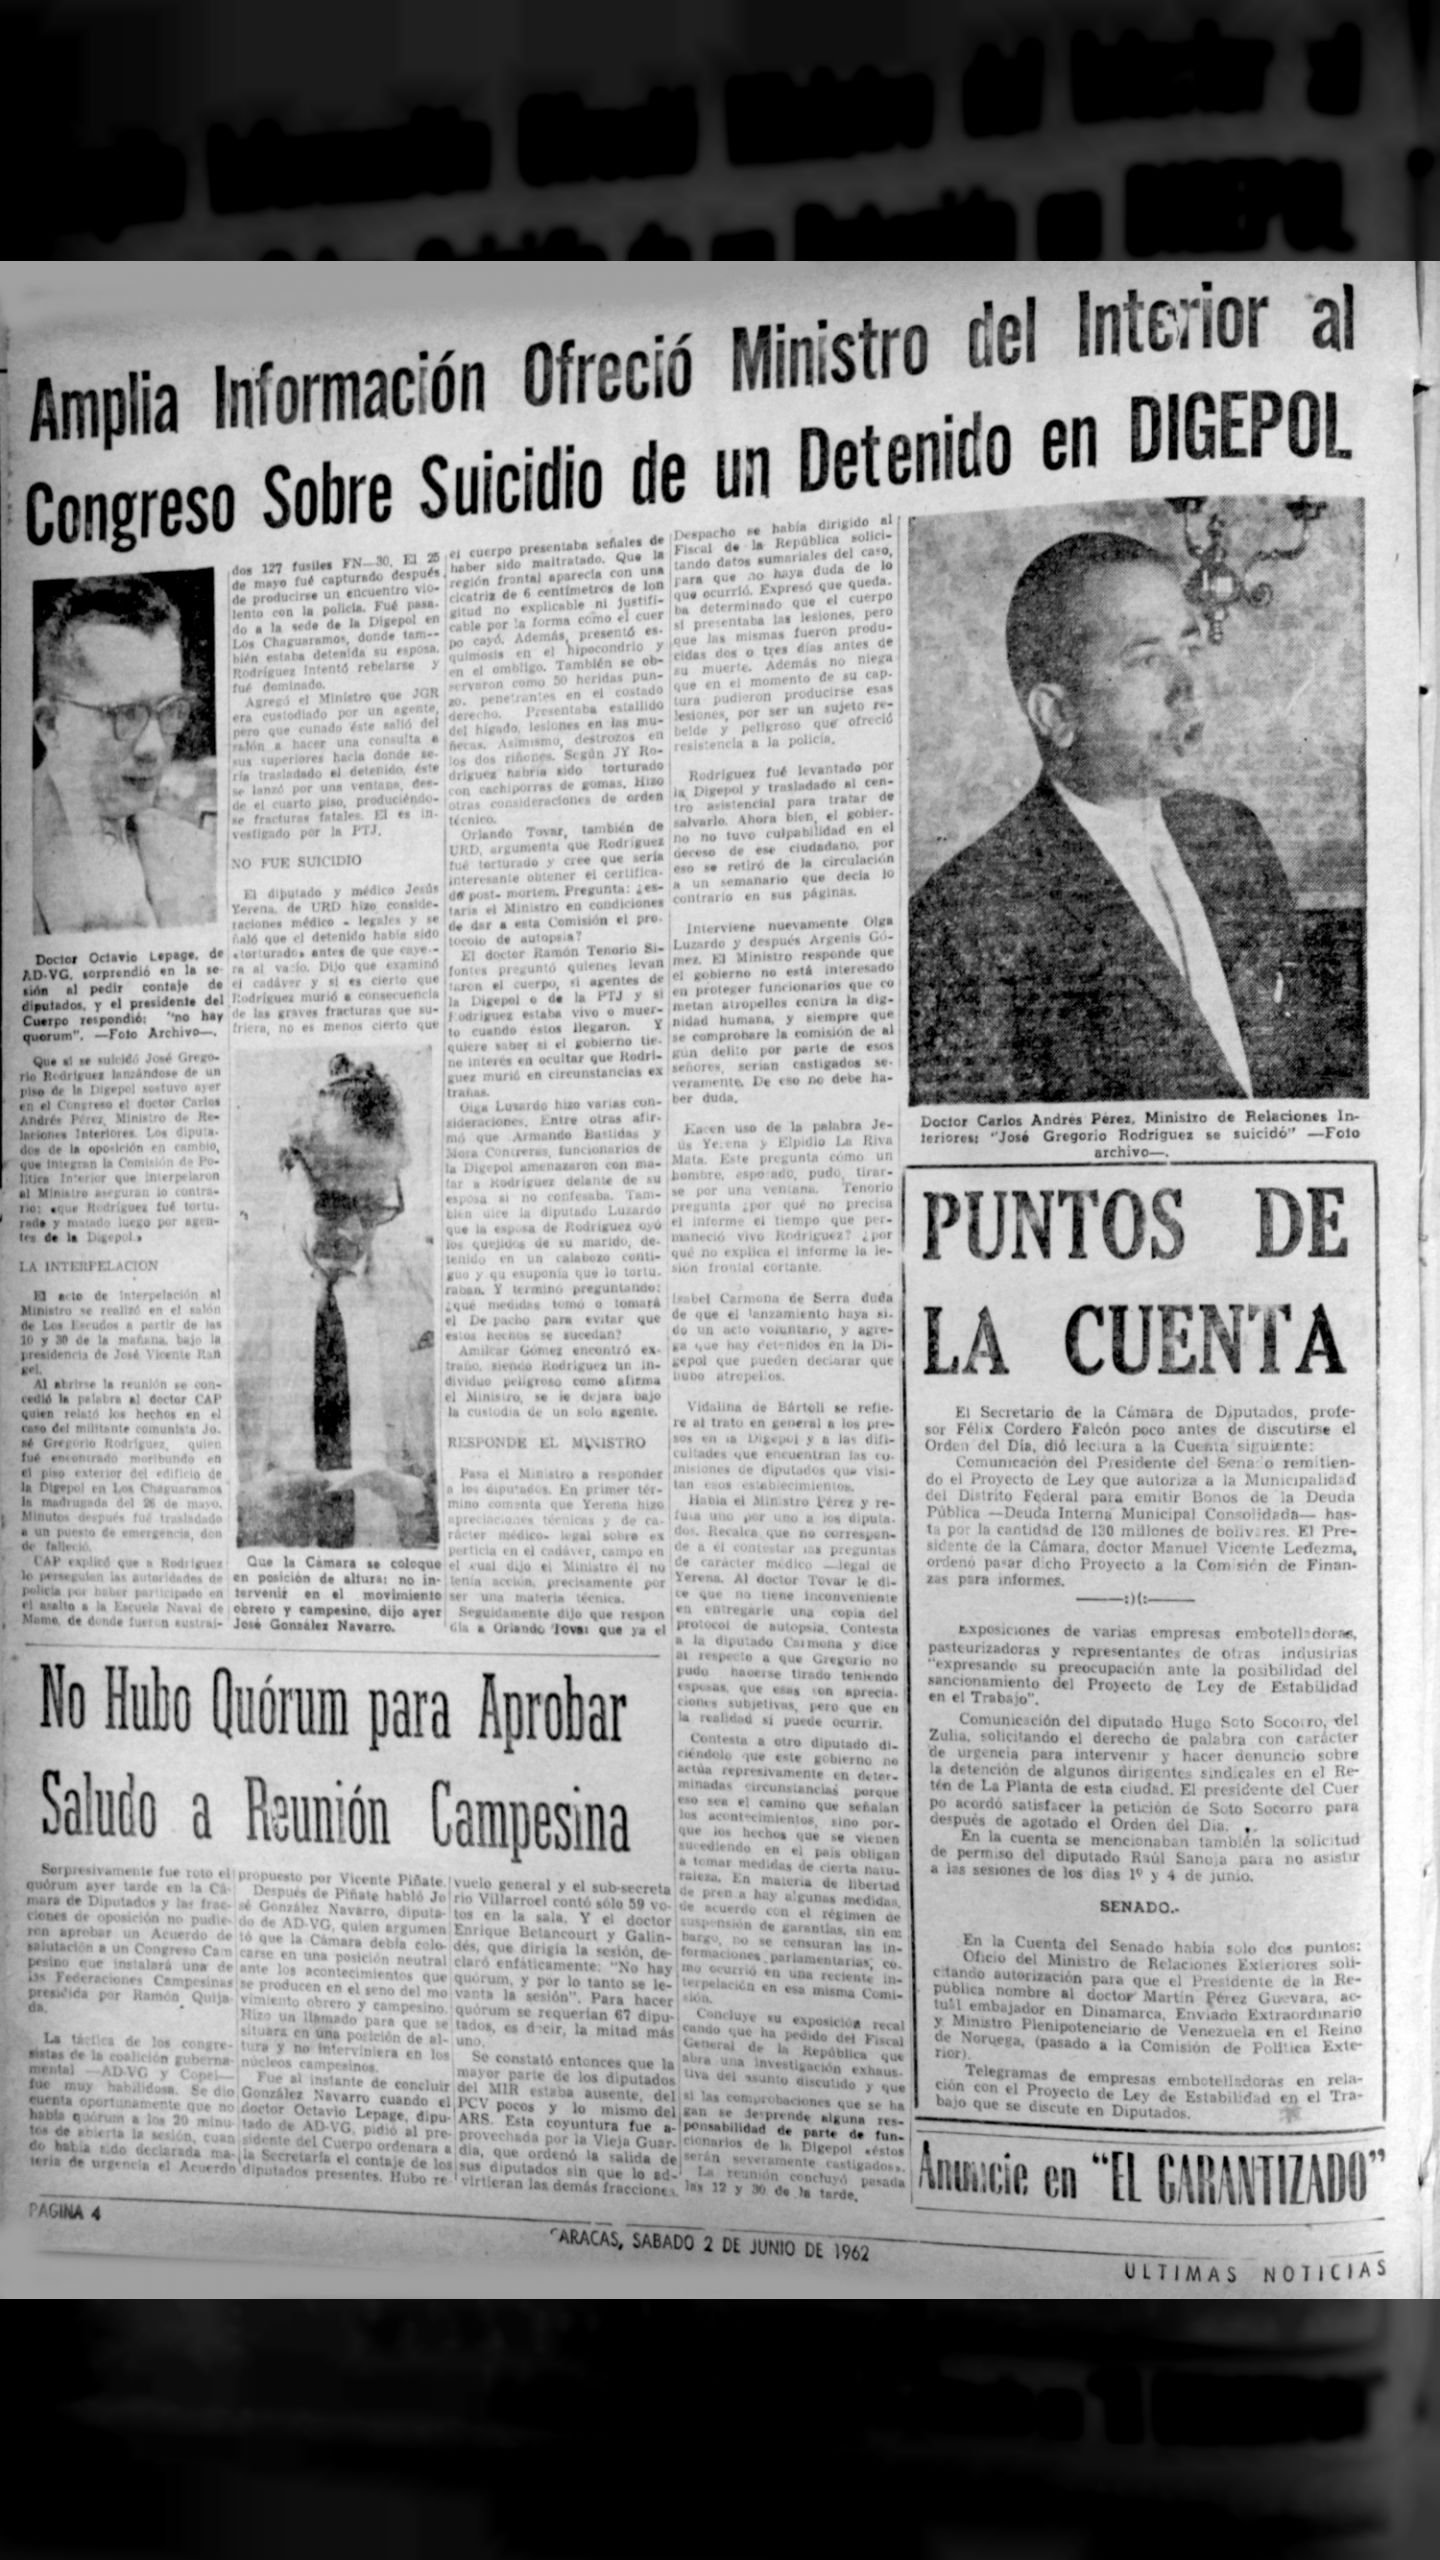 Amplia información ofreció ministro del Interior al Congreso sobre suicidio de un detenido en Digepol (Últimas Noticias, 2 de junio de 1962)